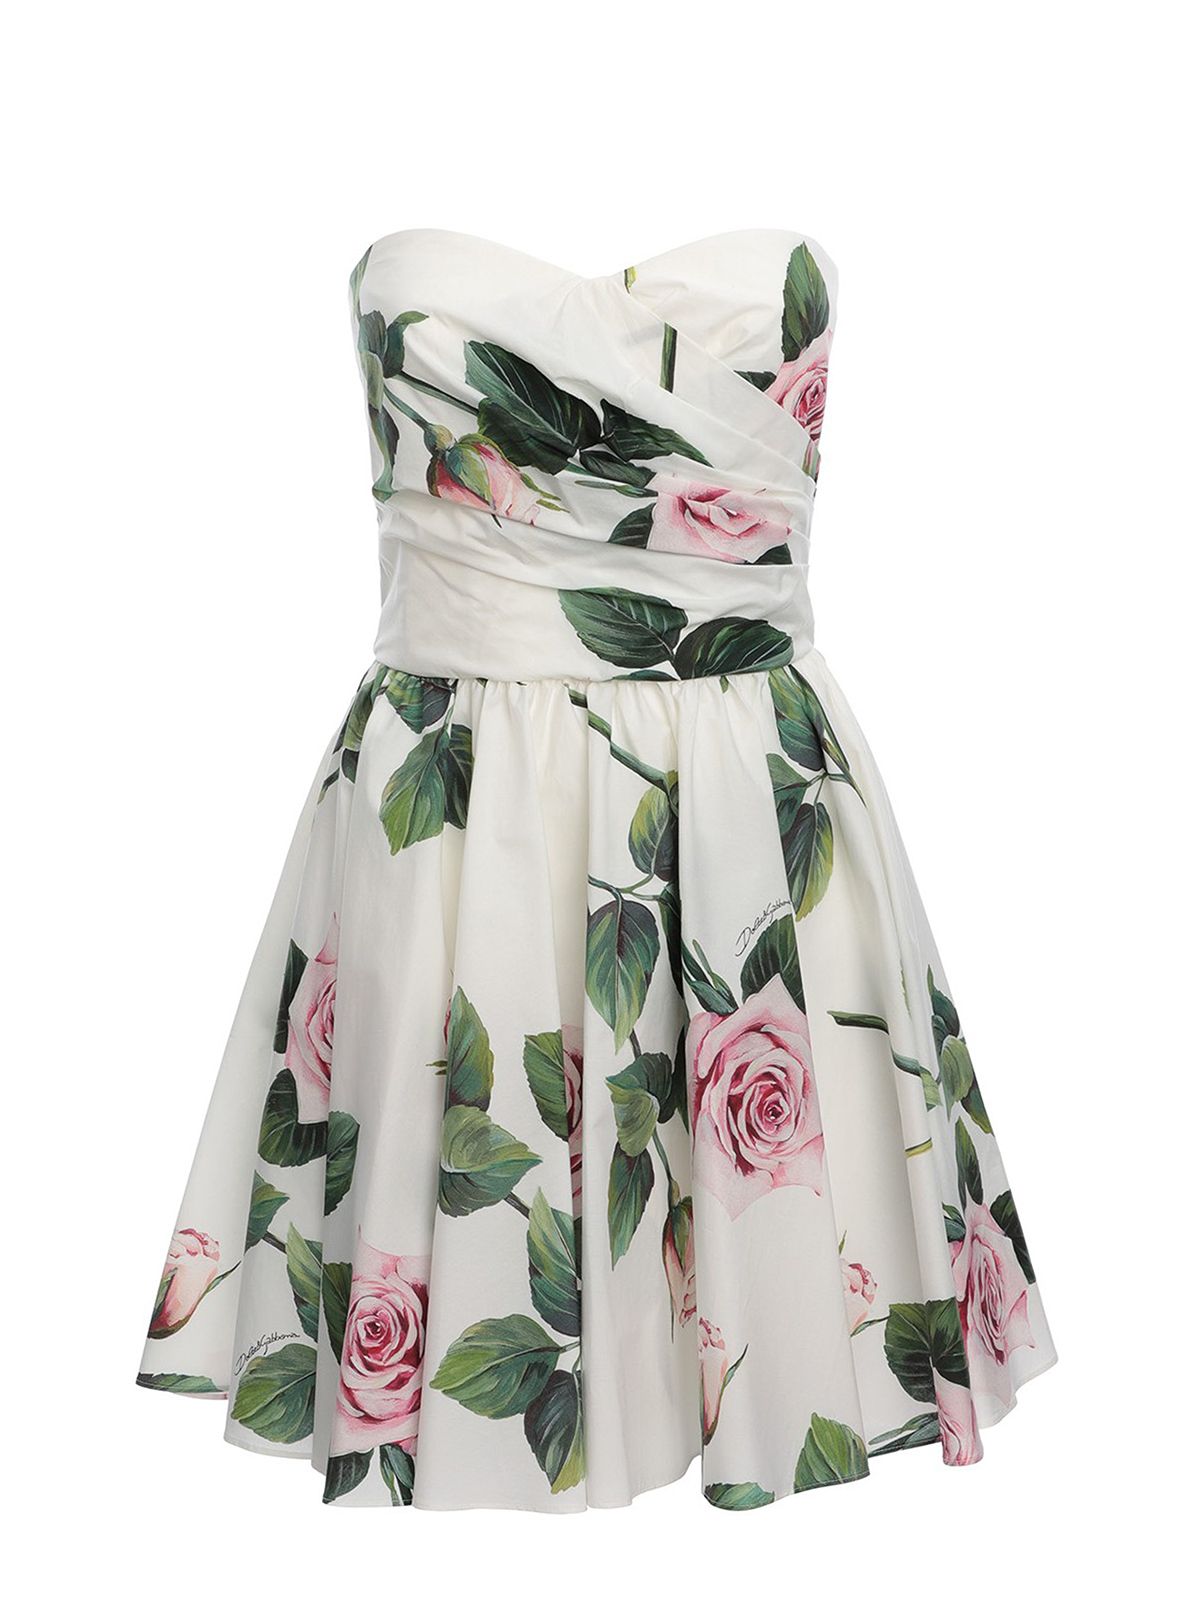 Tropical Rose printed short dress ...